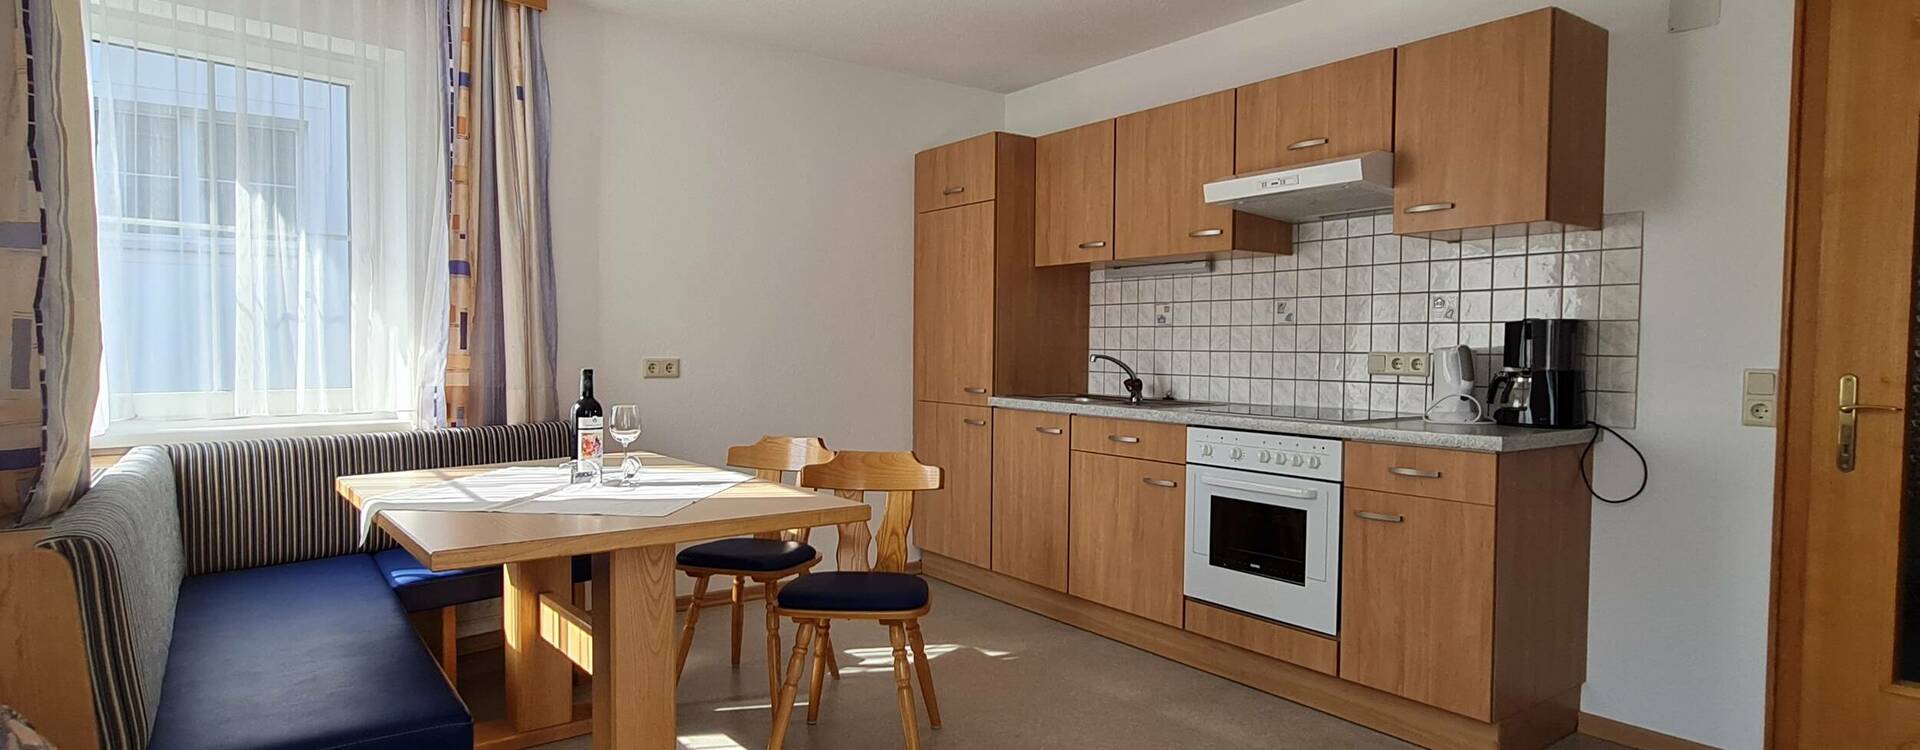  Küche Apartment 4 - Apart Hosp Ischgl